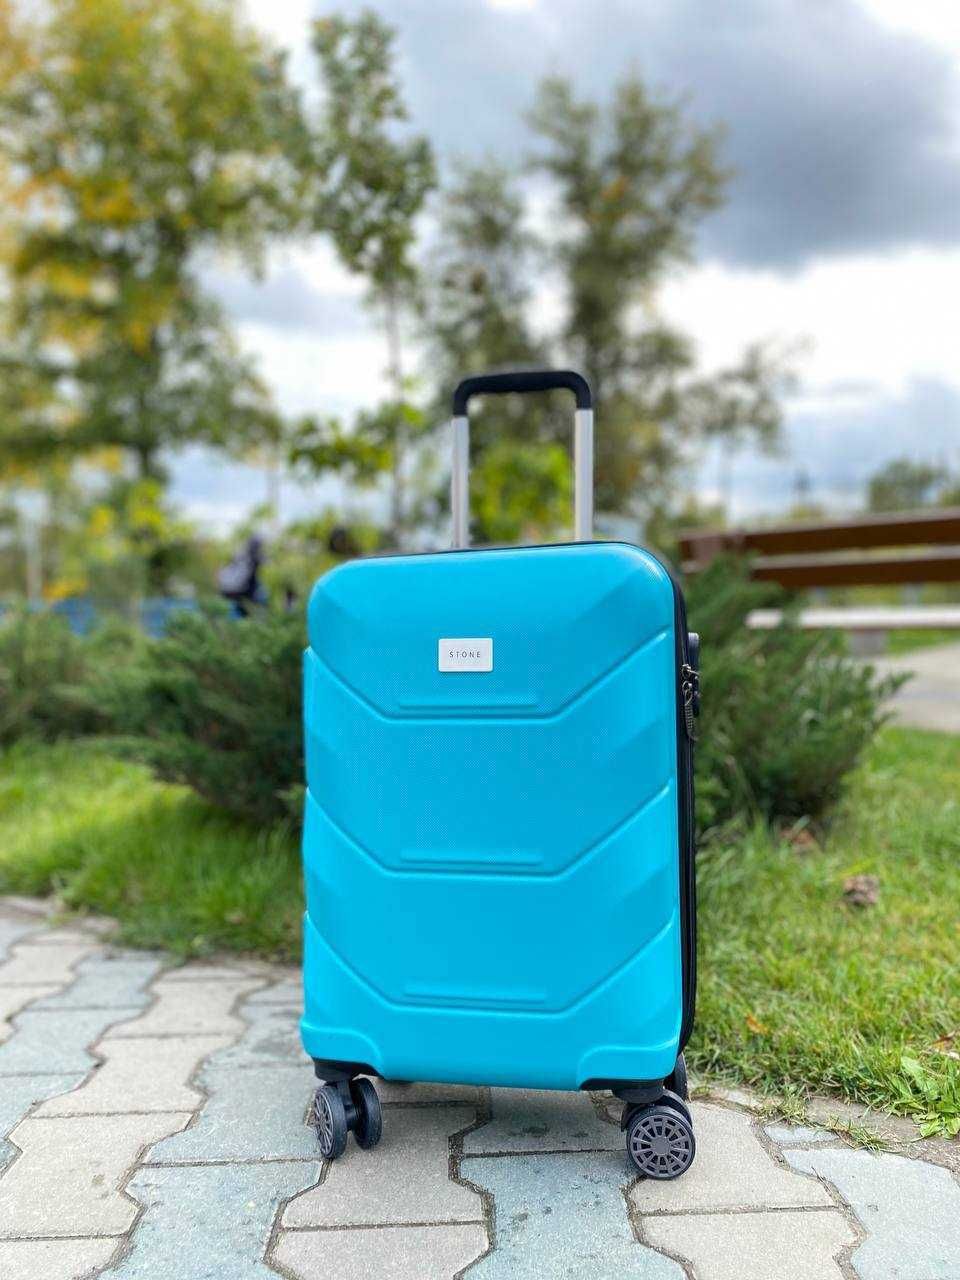 КАЧЕСТВО Большой пластиковый чемодан поликарбонат / велика валіза